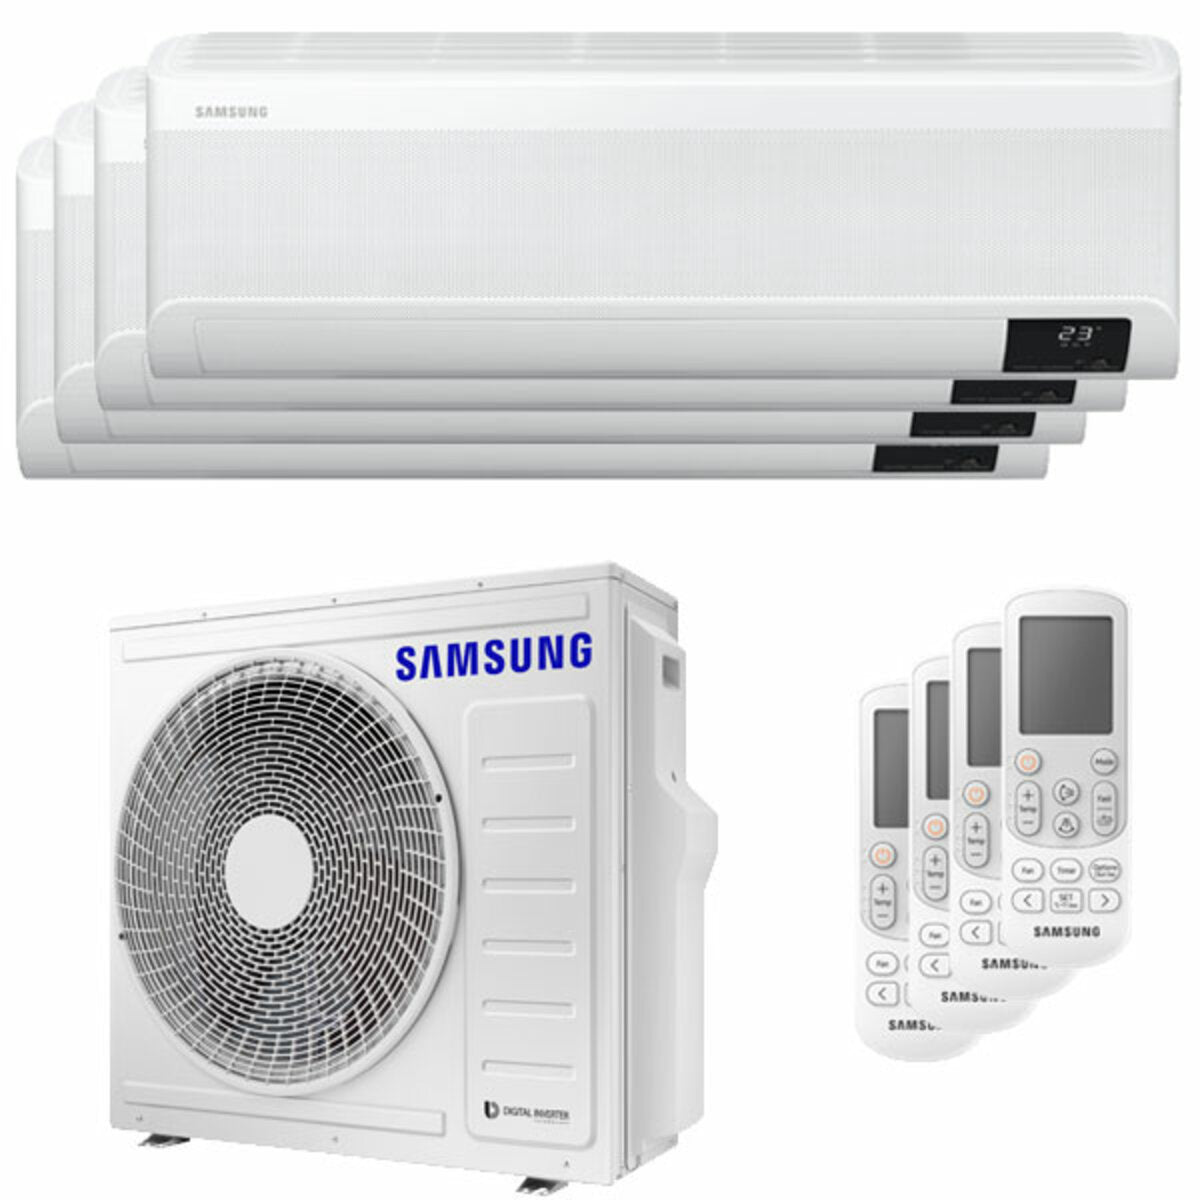 Samsung windfreie Klimaanlage Avant Quadri Split 9000 + 9000 + 12000 + 12000 BTU Inverter A++ WLAN Außengerät 8,0 kW